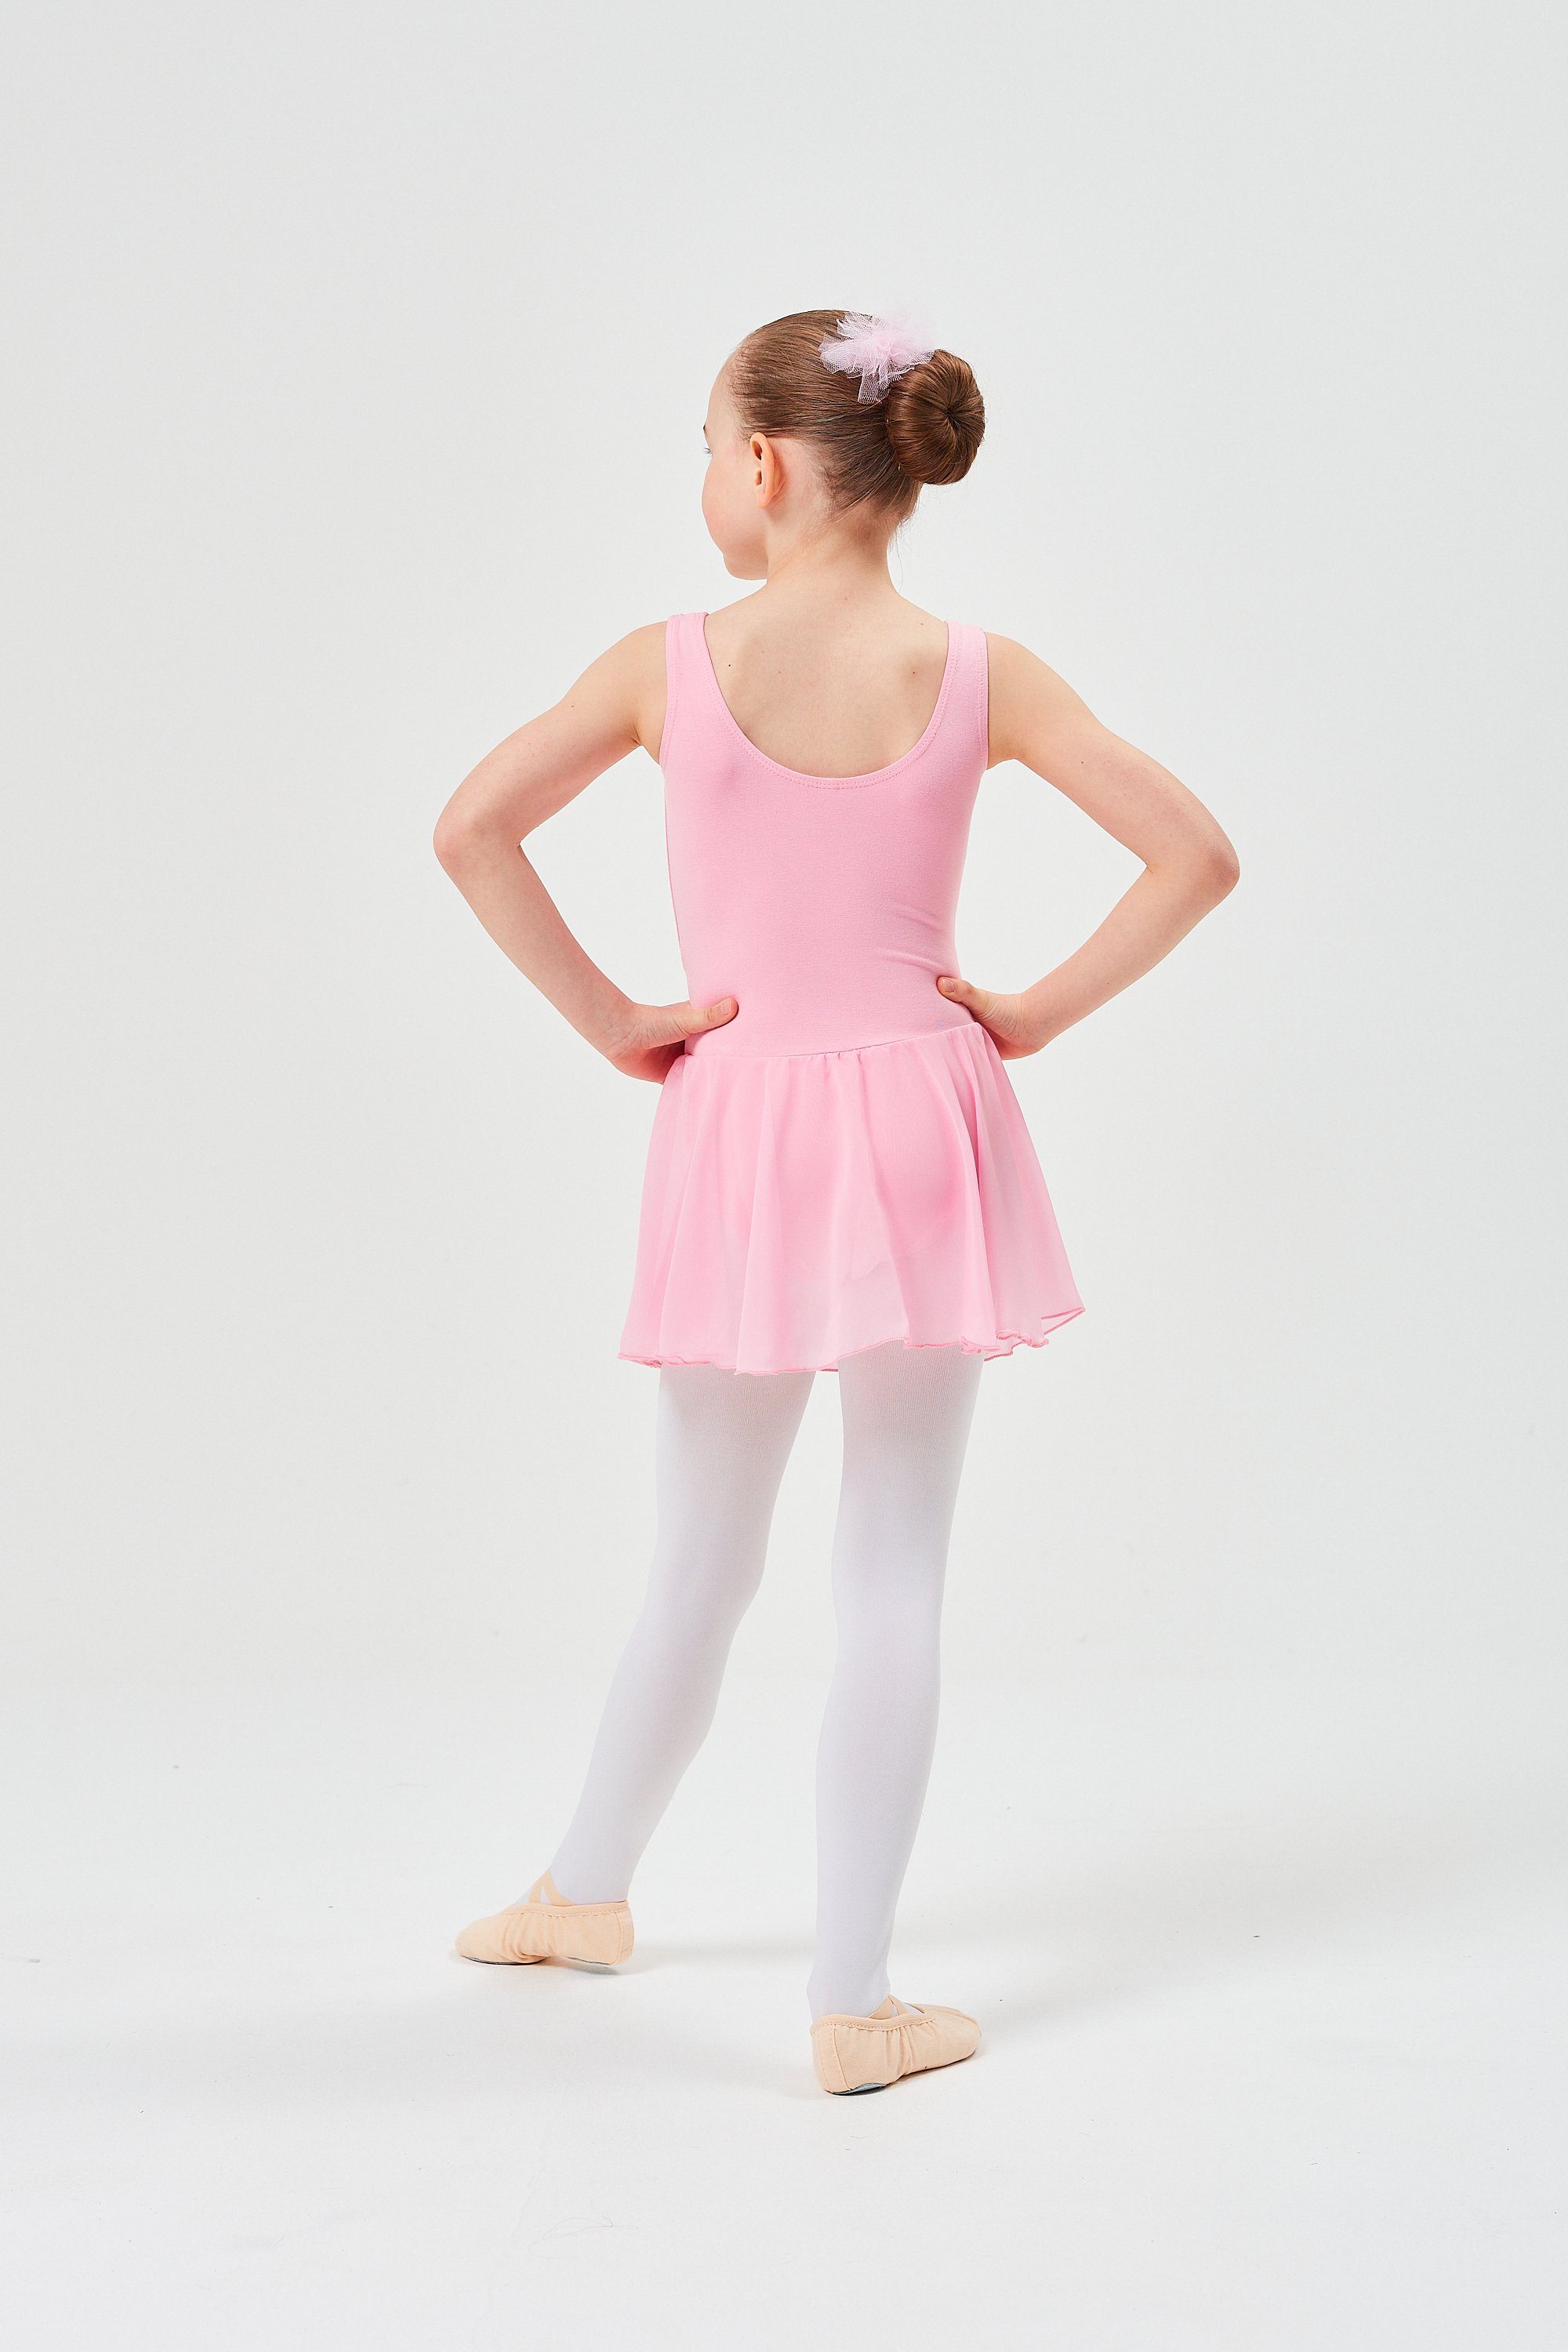 Trikot weichem Chiffon wunderbar Minnie aus rosa Röckchen Ballett Ballettkleid mit Chiffonkleid Mädchen Baumwollmaterial für tanzmuster